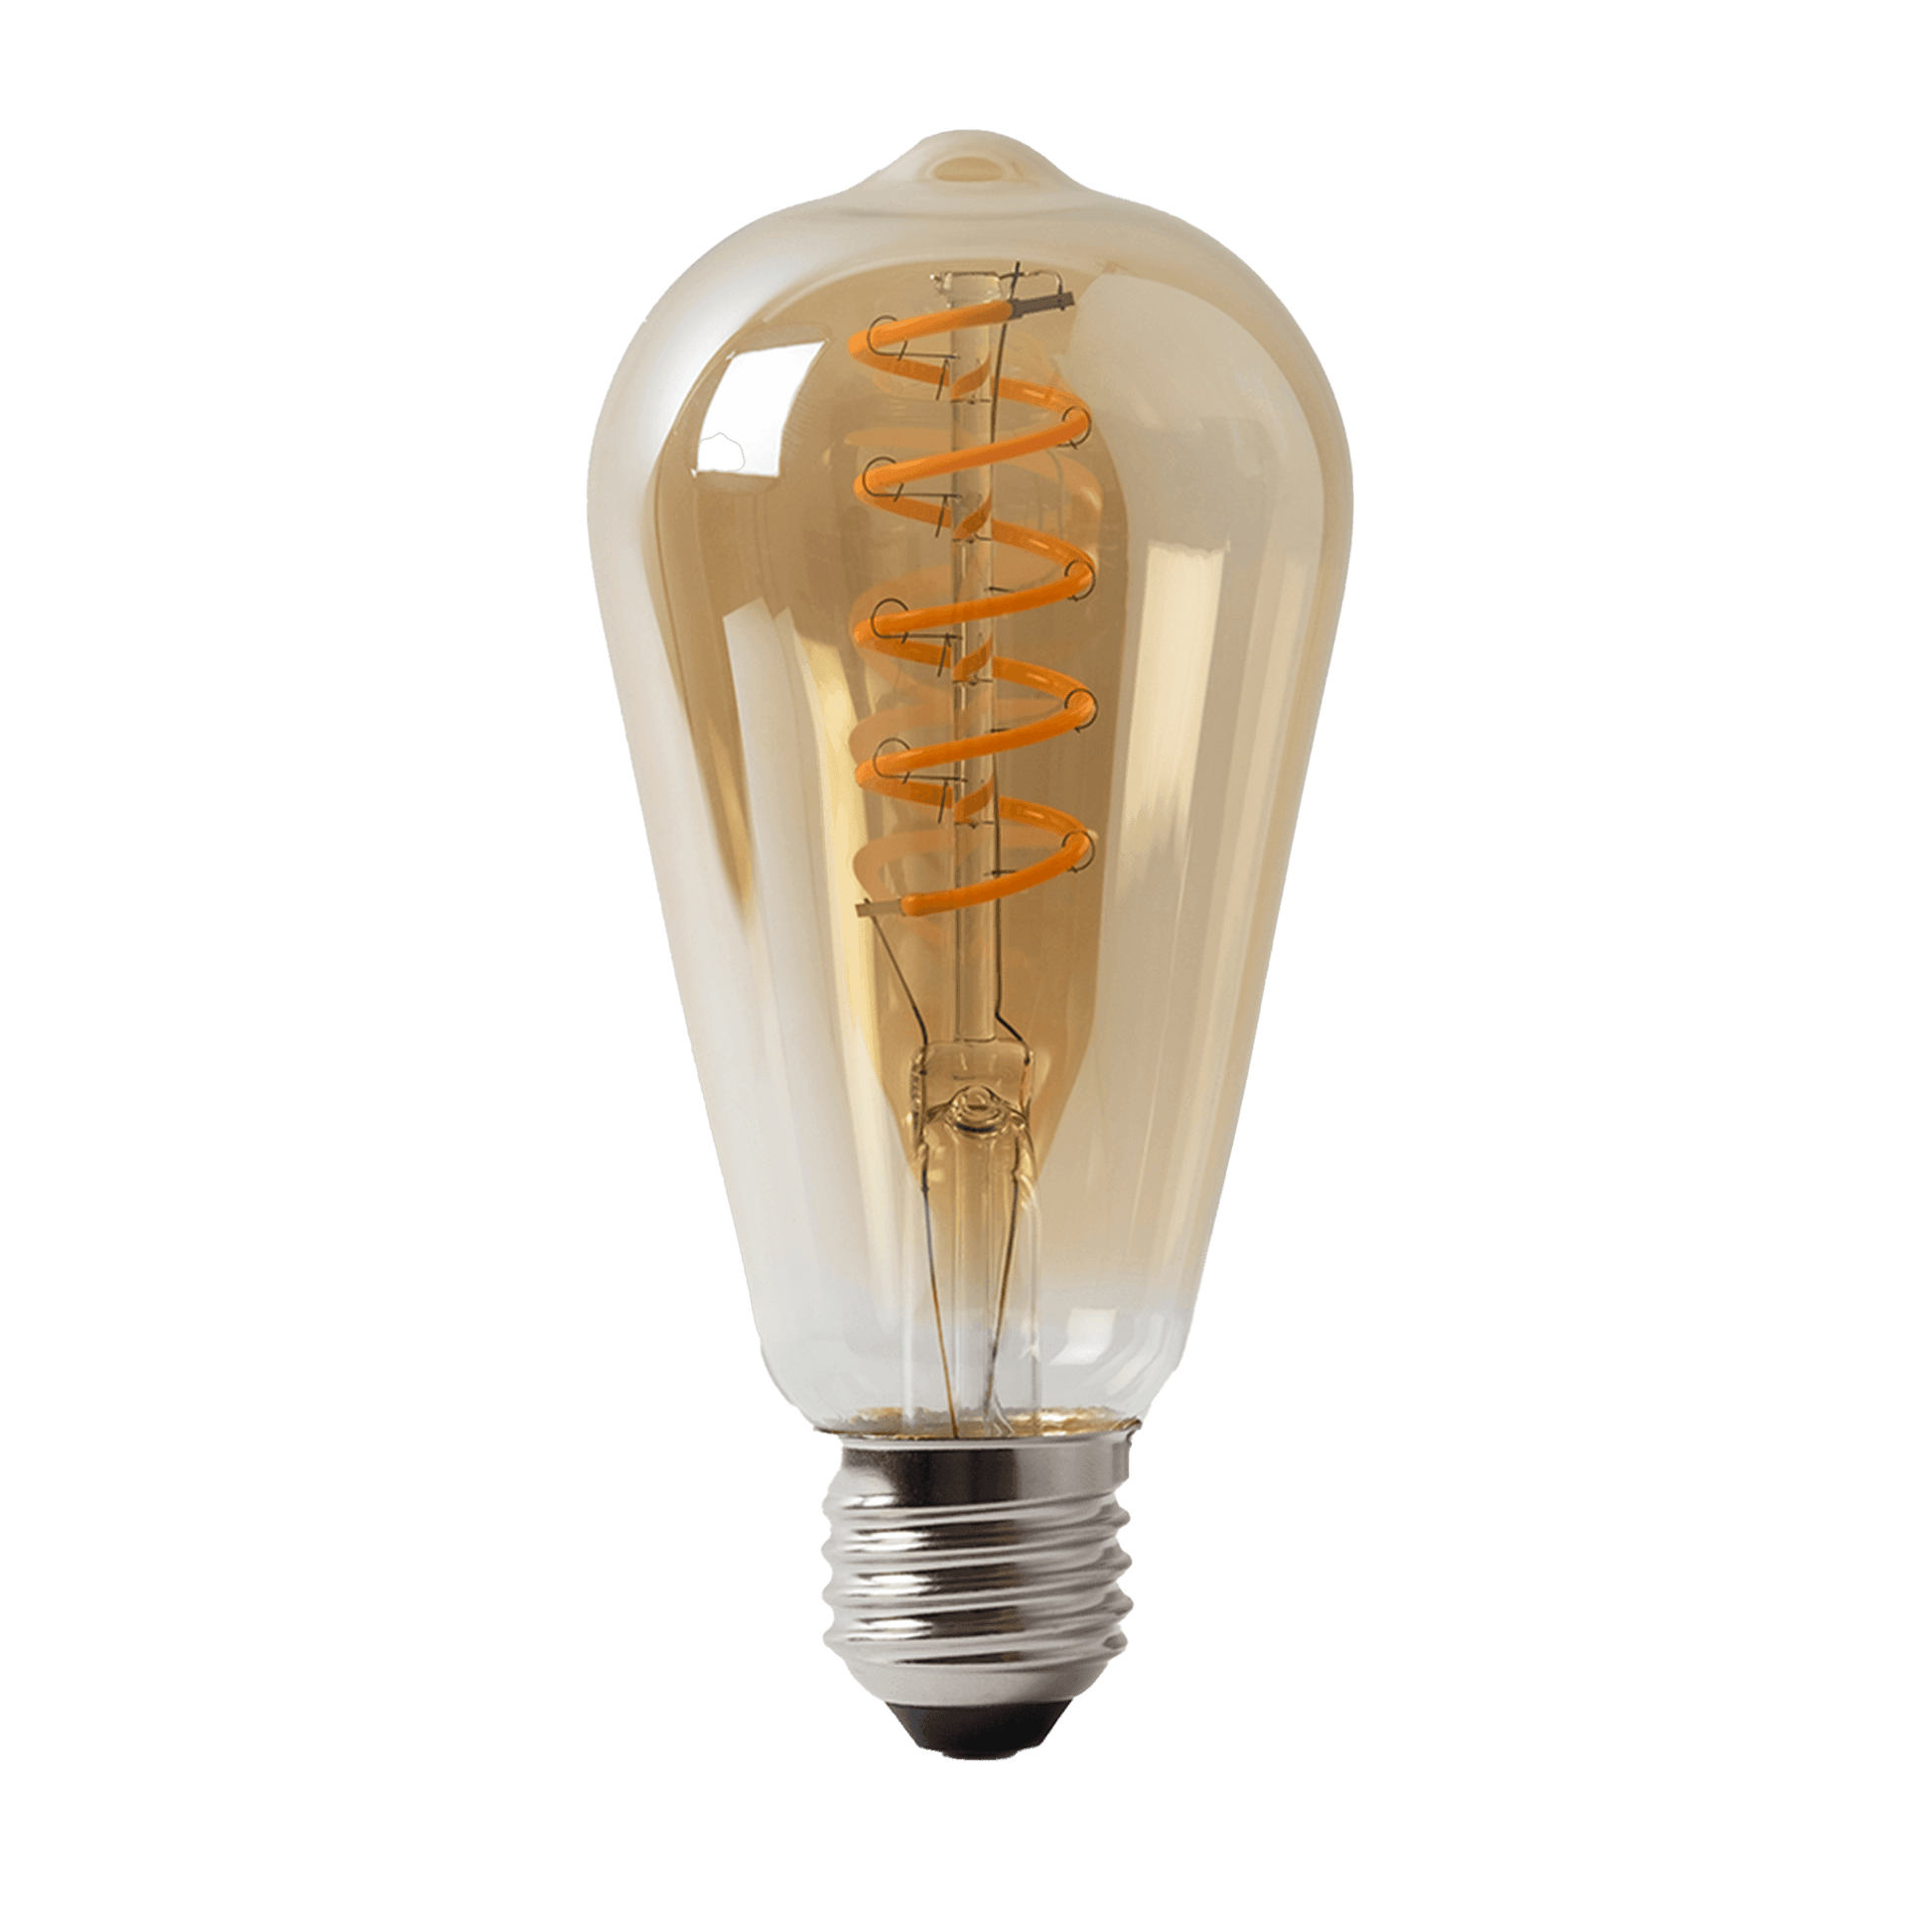 Edison Teardrop LED Lightbulb - Bilden Home & Hardware Market